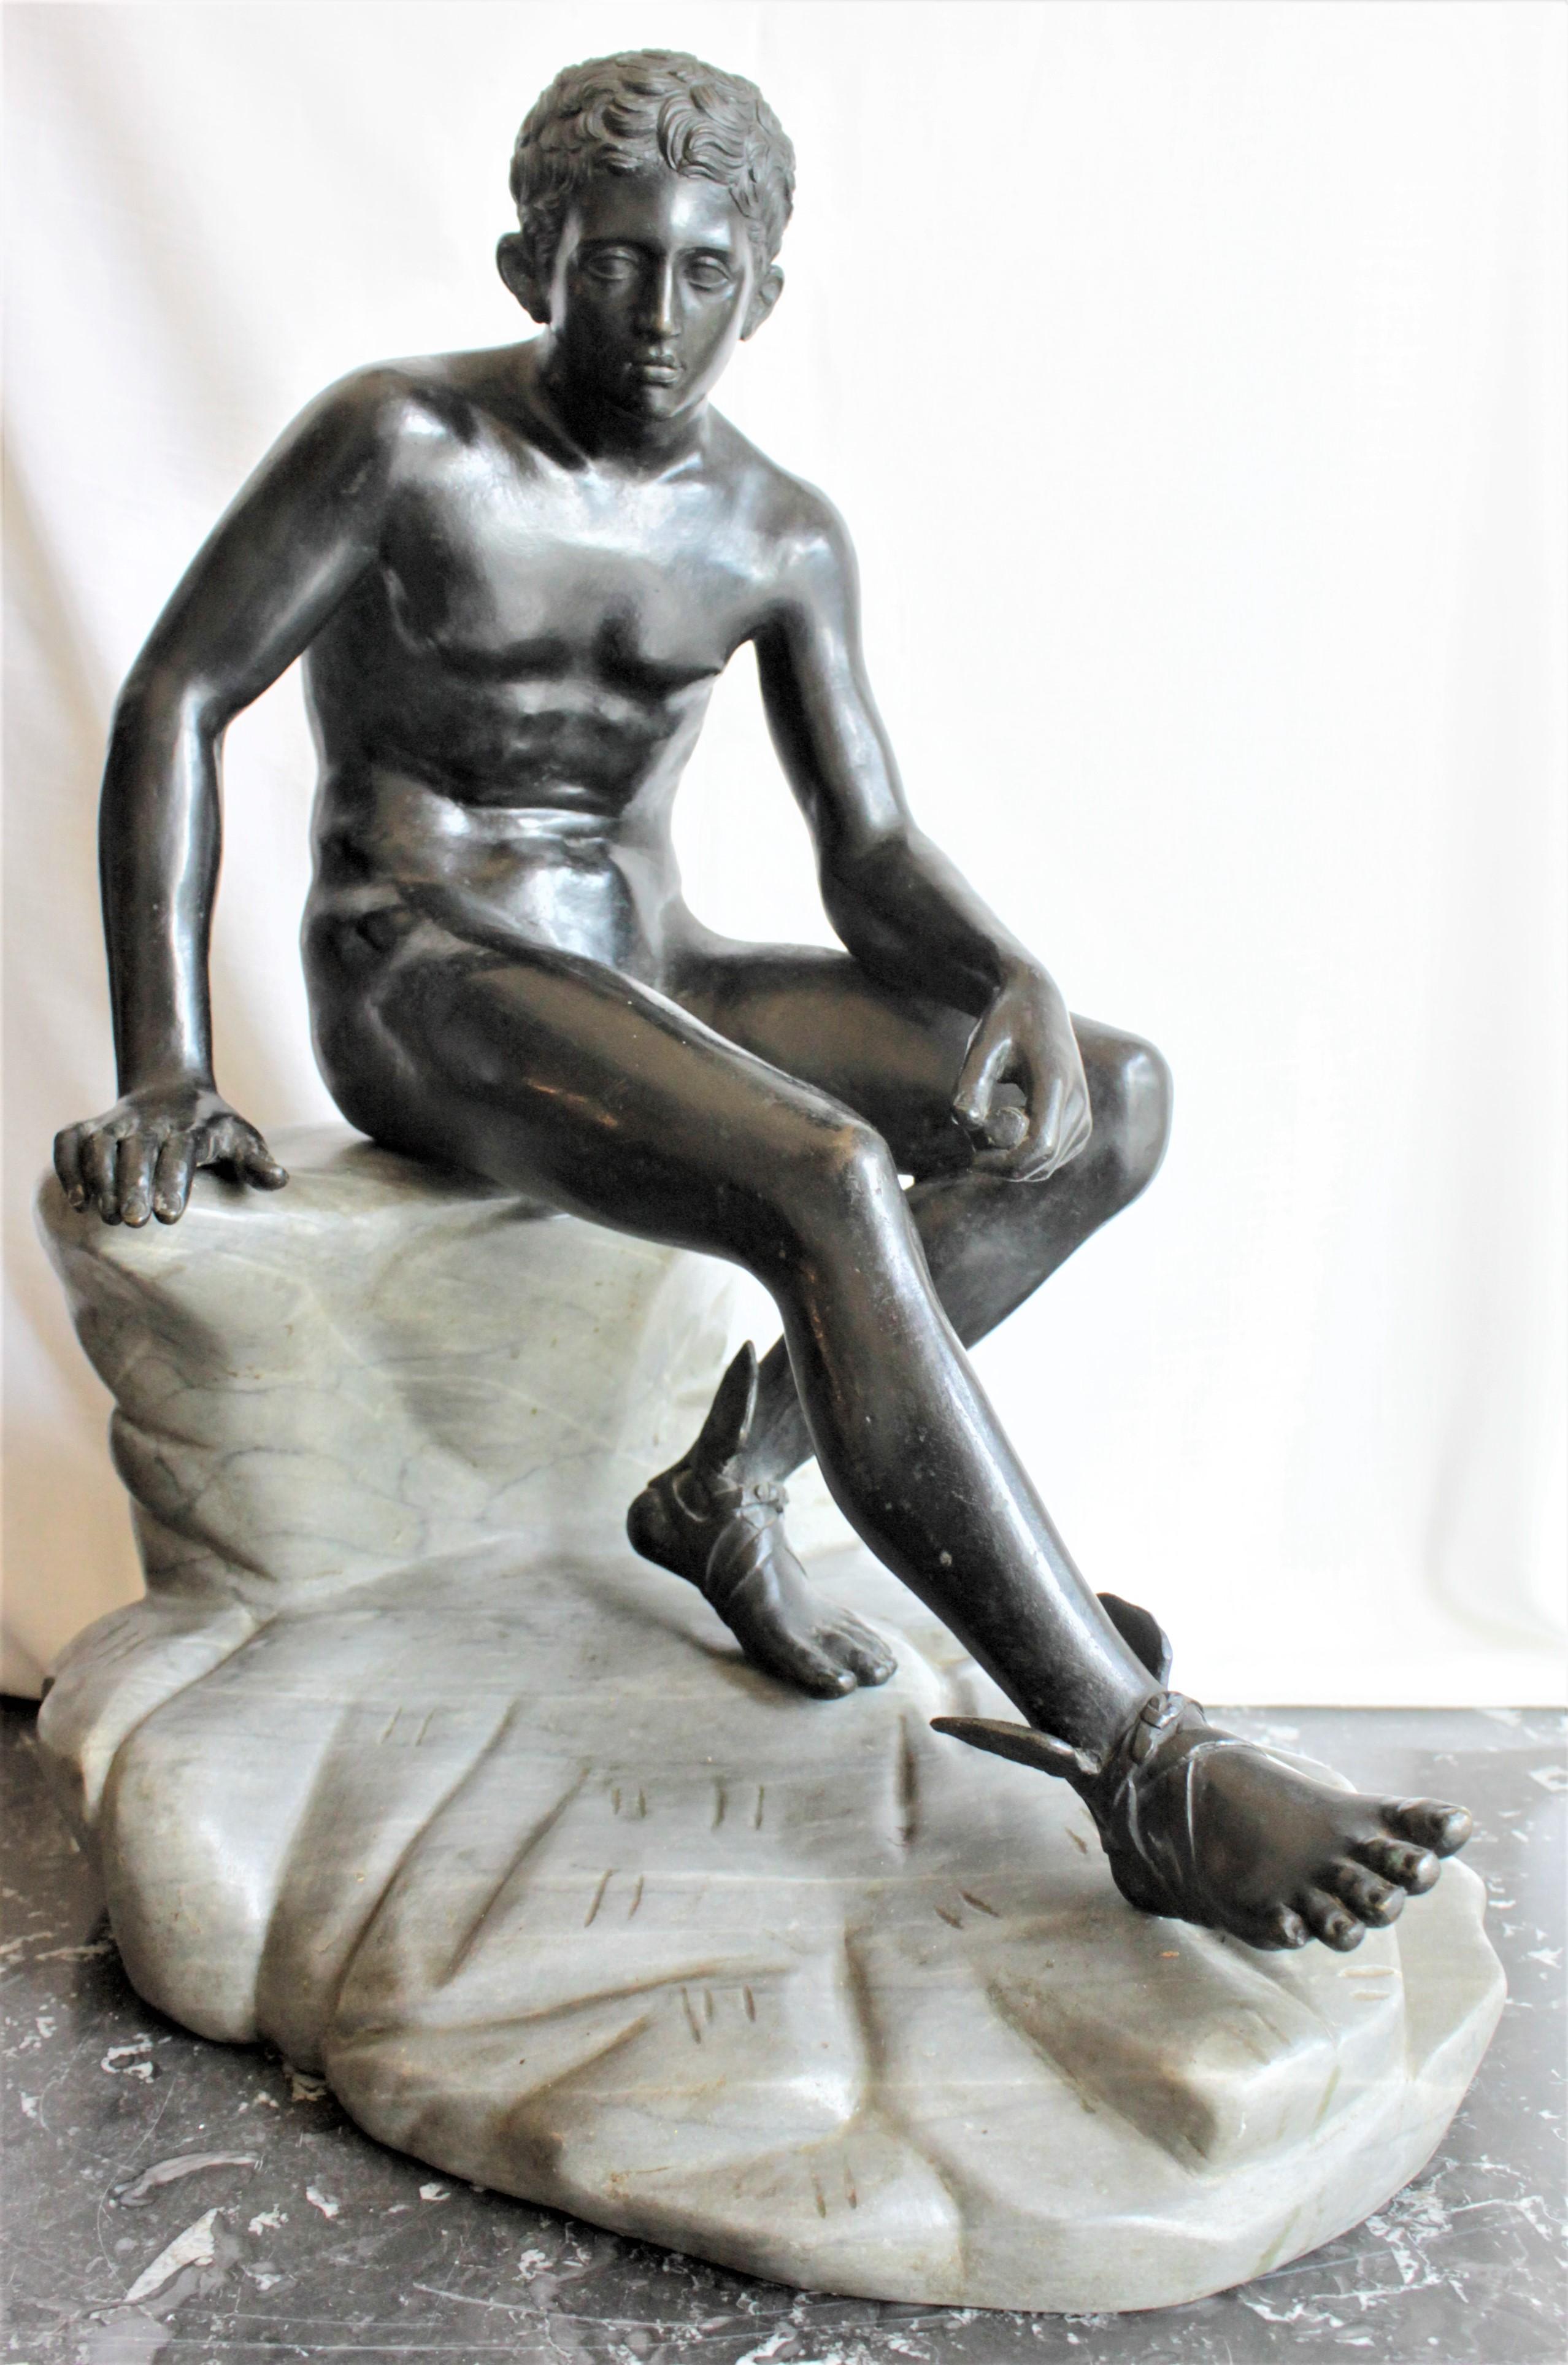 Cette grande et substantielle sculpture en bronze coulé n'est pas signée, mais on présume qu'elle a été réalisée vers 1880 pour le Grand Tour. La sculpture représente le dieu grec Hermès ou mercure assis sur un rocher, une jambe tendue. Le moulage